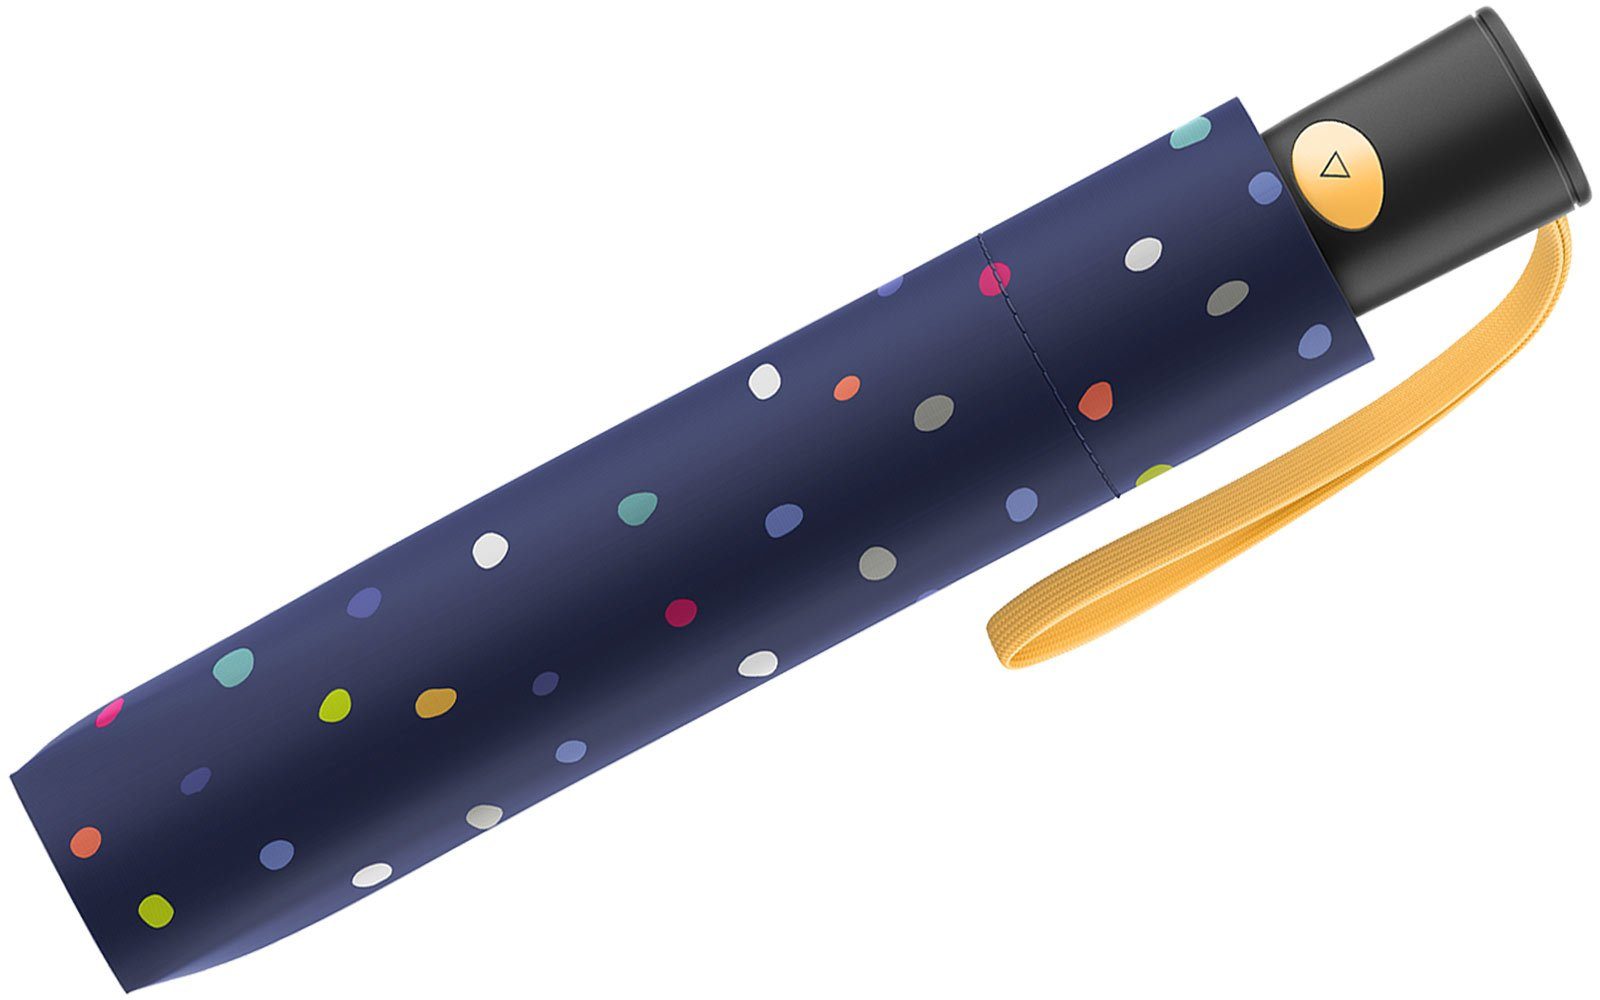 bunter - Taschenregenschirm ein blue, Auf-Automatik Colors of mit Konfettiregen Mini blau Dots Benetton United